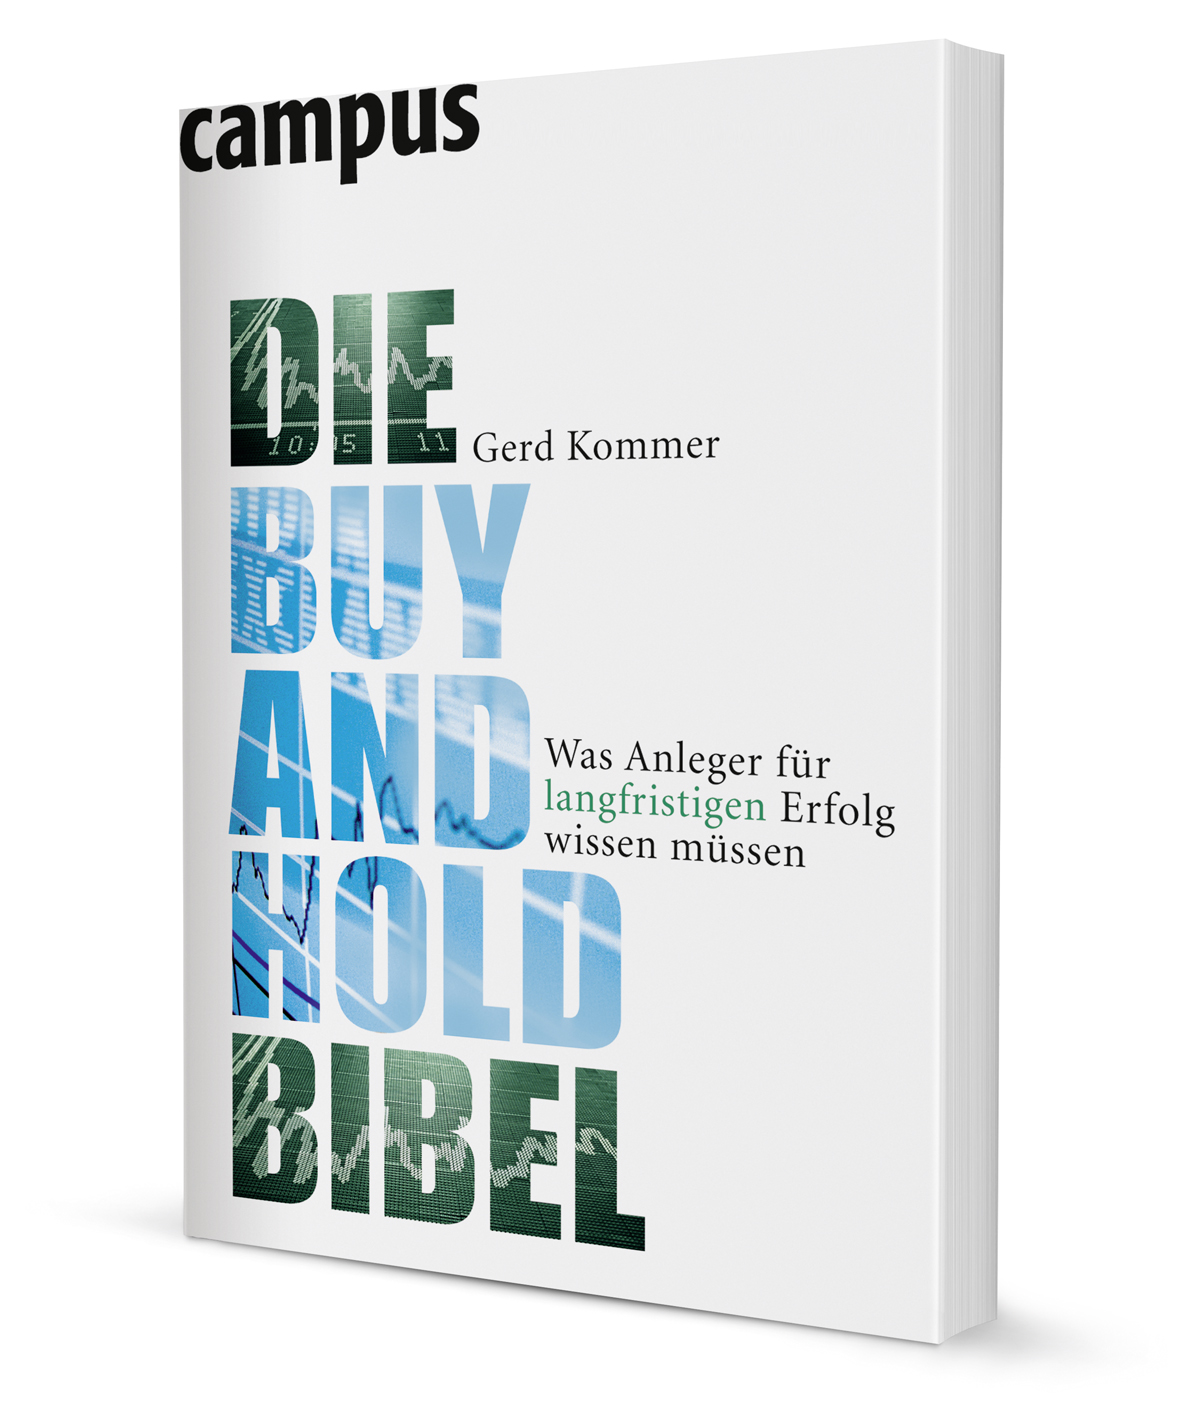 Die Buy-and-Hold-Bibel